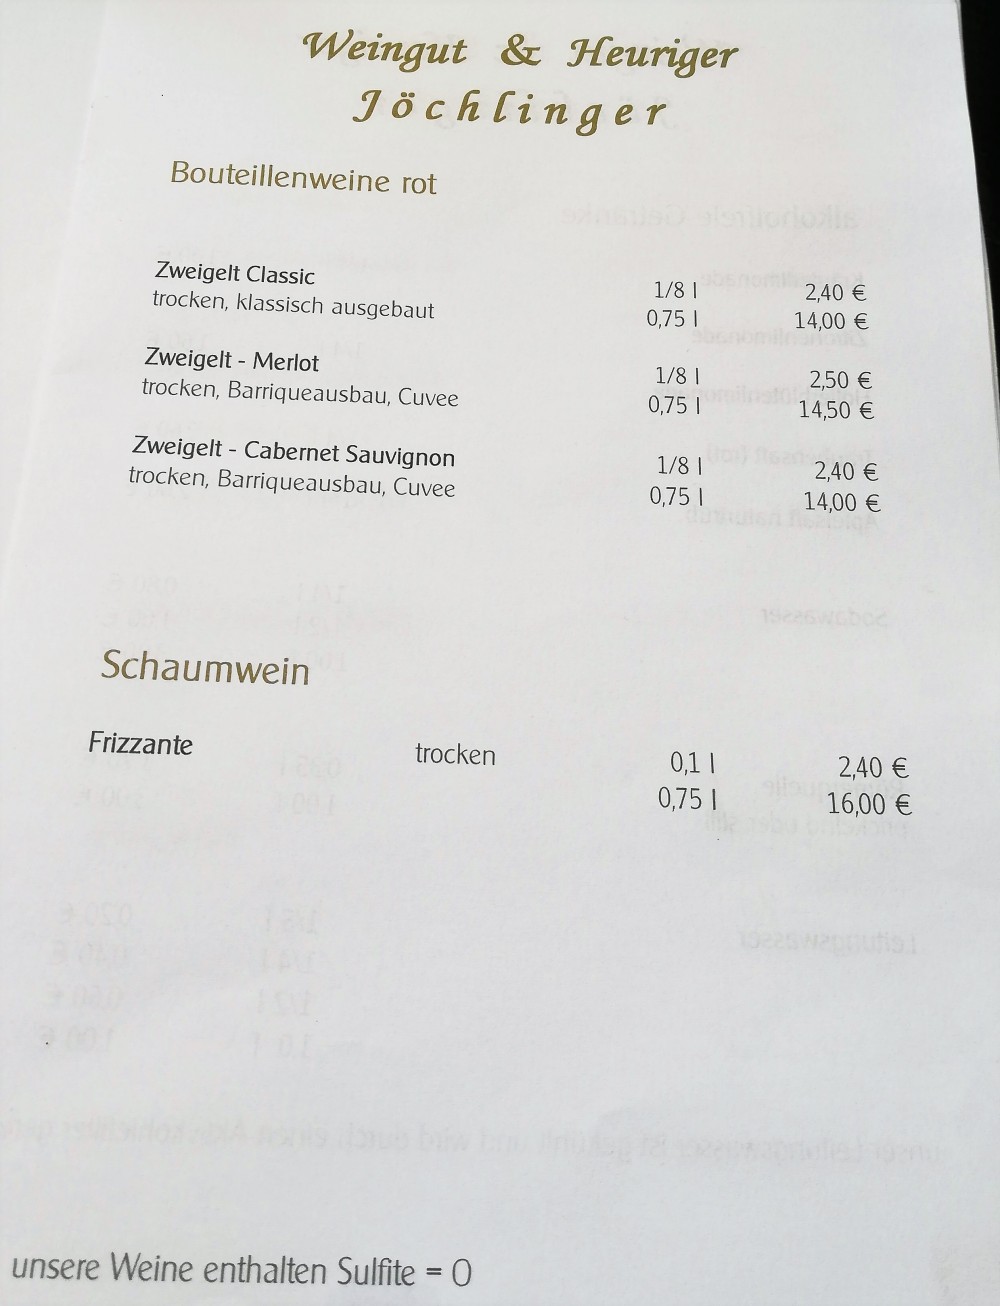 Die Weinpreise vom 20.9.2018 - Jöchlinger - Hagenbrunn